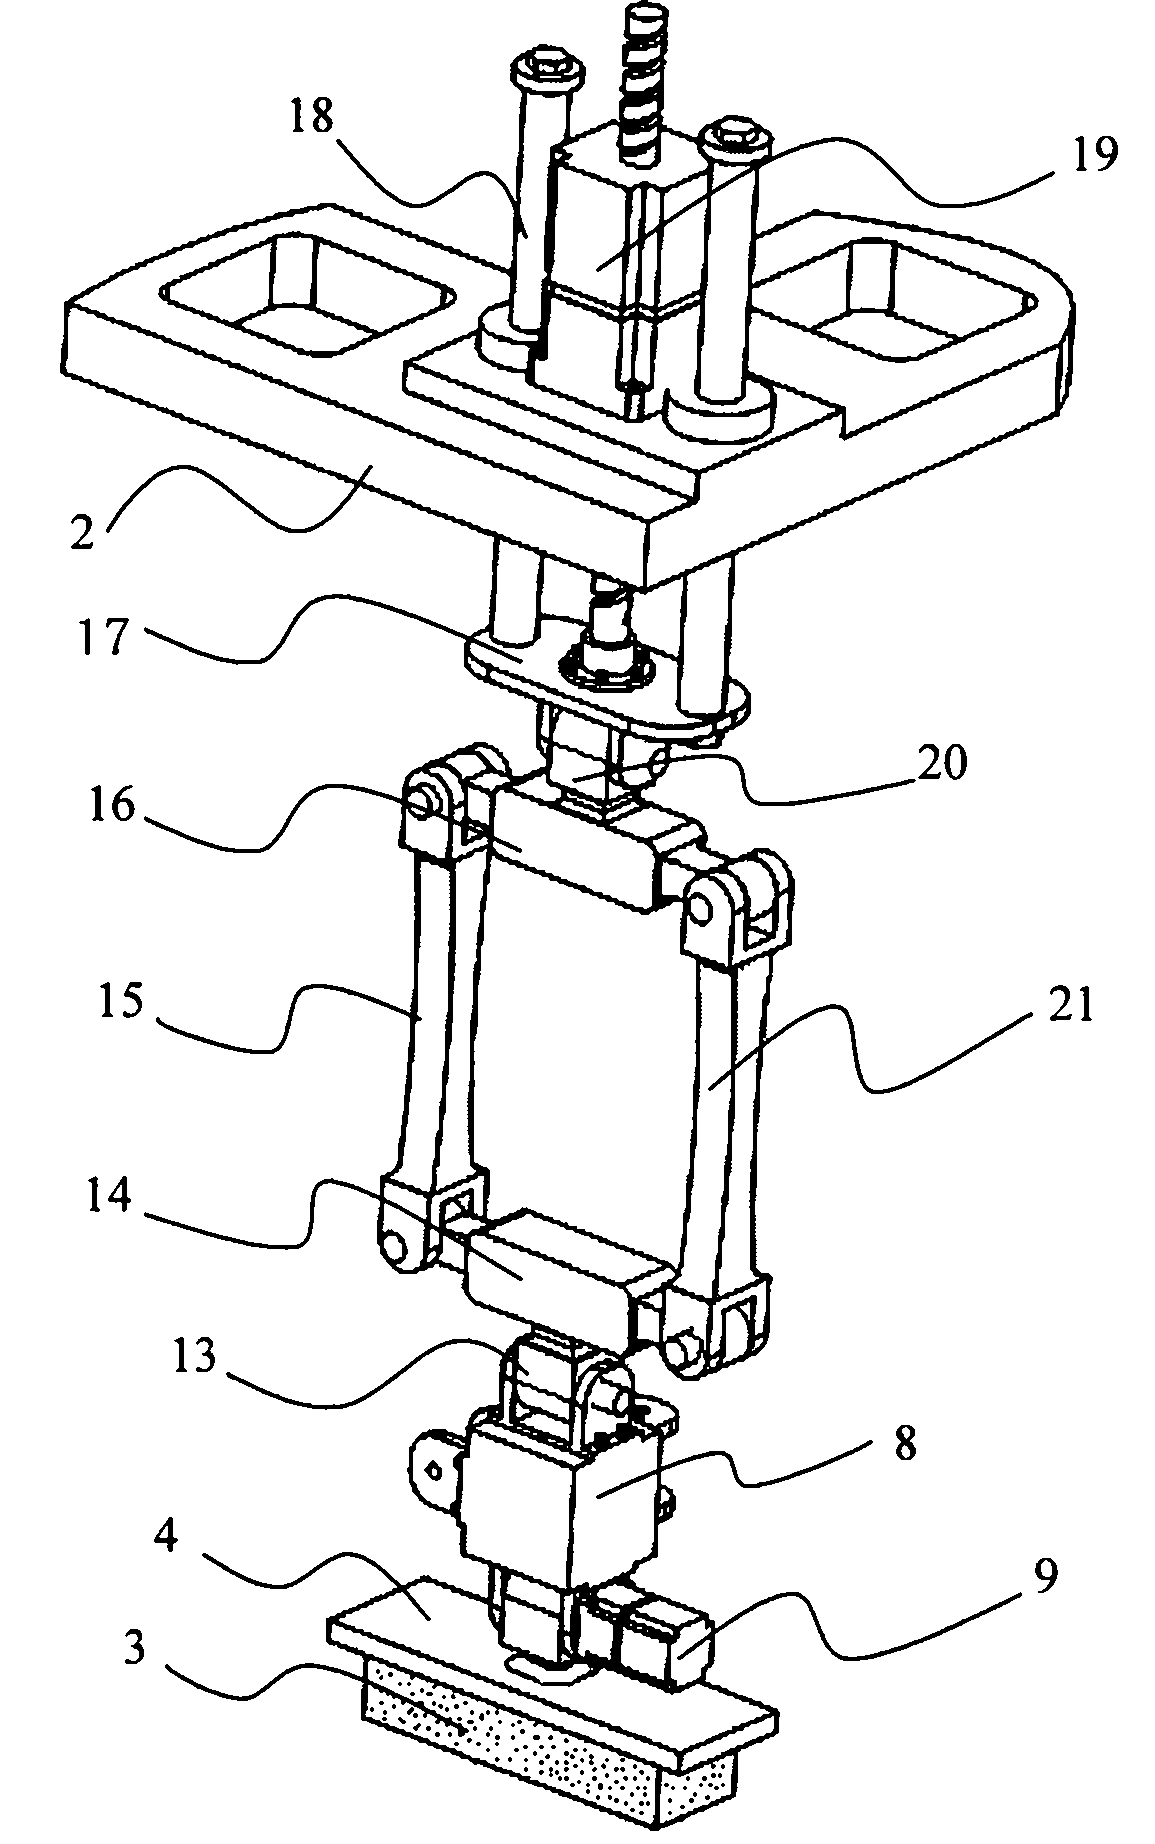 Four-dimensional skate edge grinding apparatus